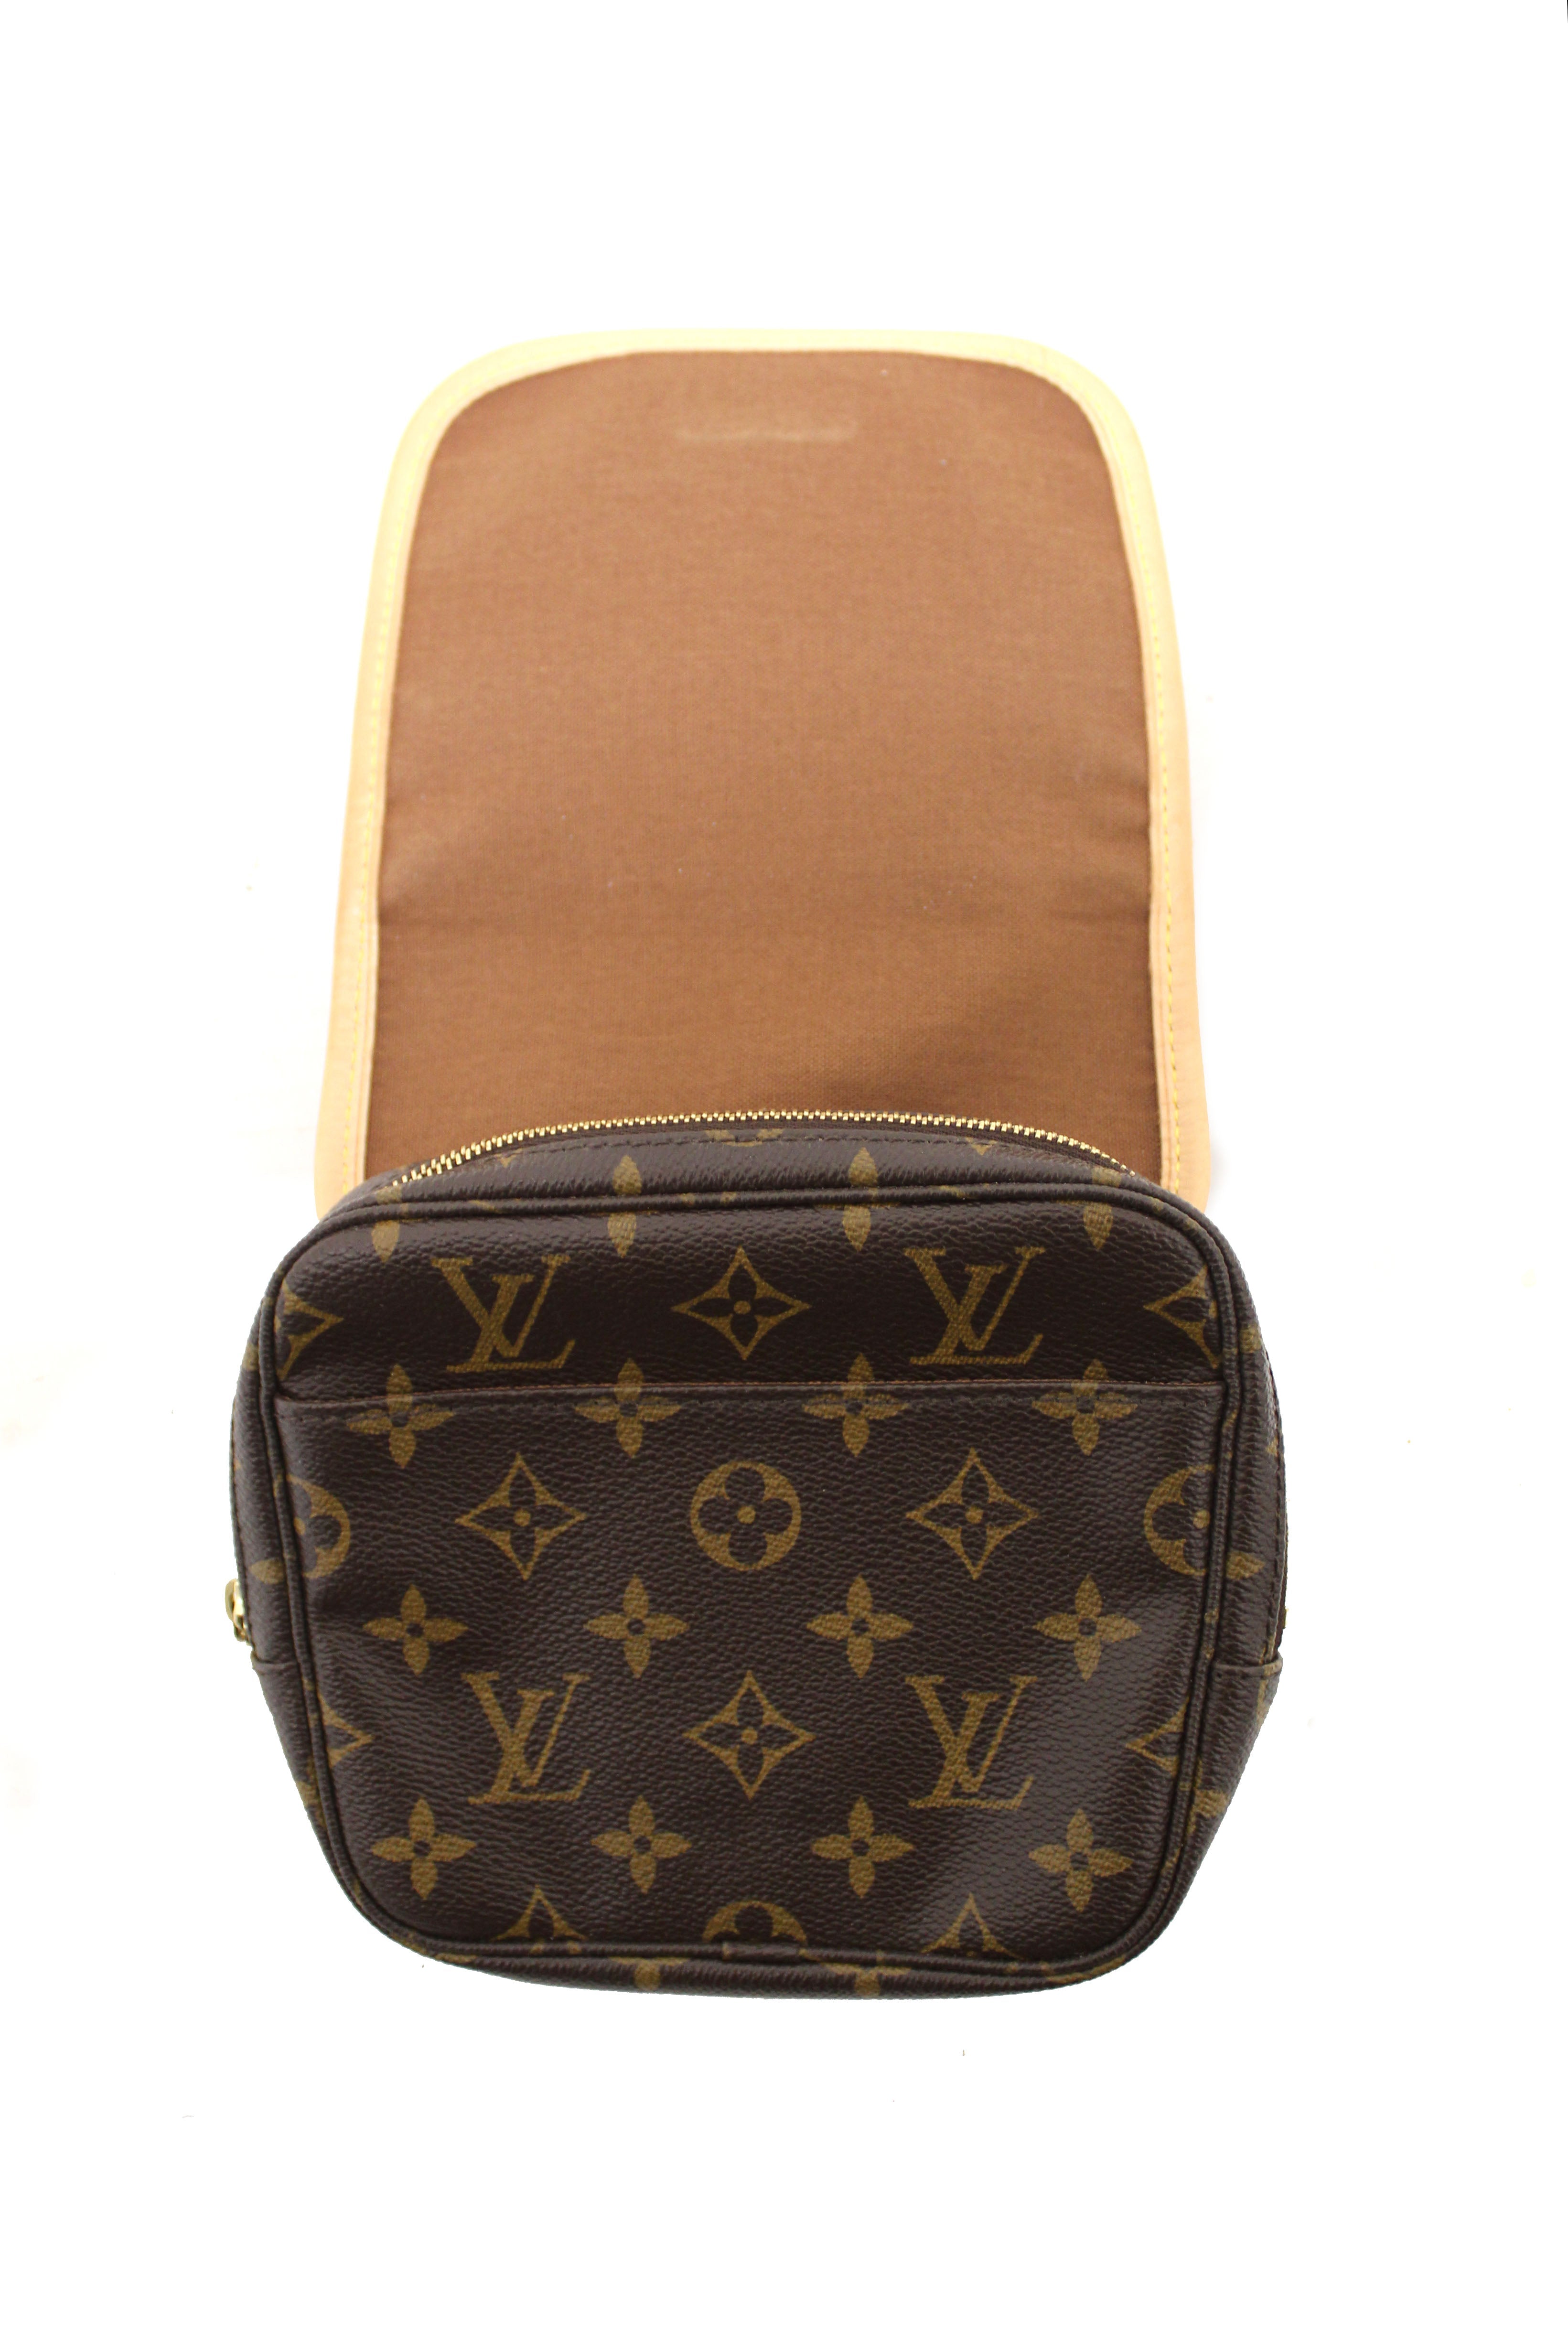 Authentic Louis Vuitton Classic Monogram Bosphore Belt Bag